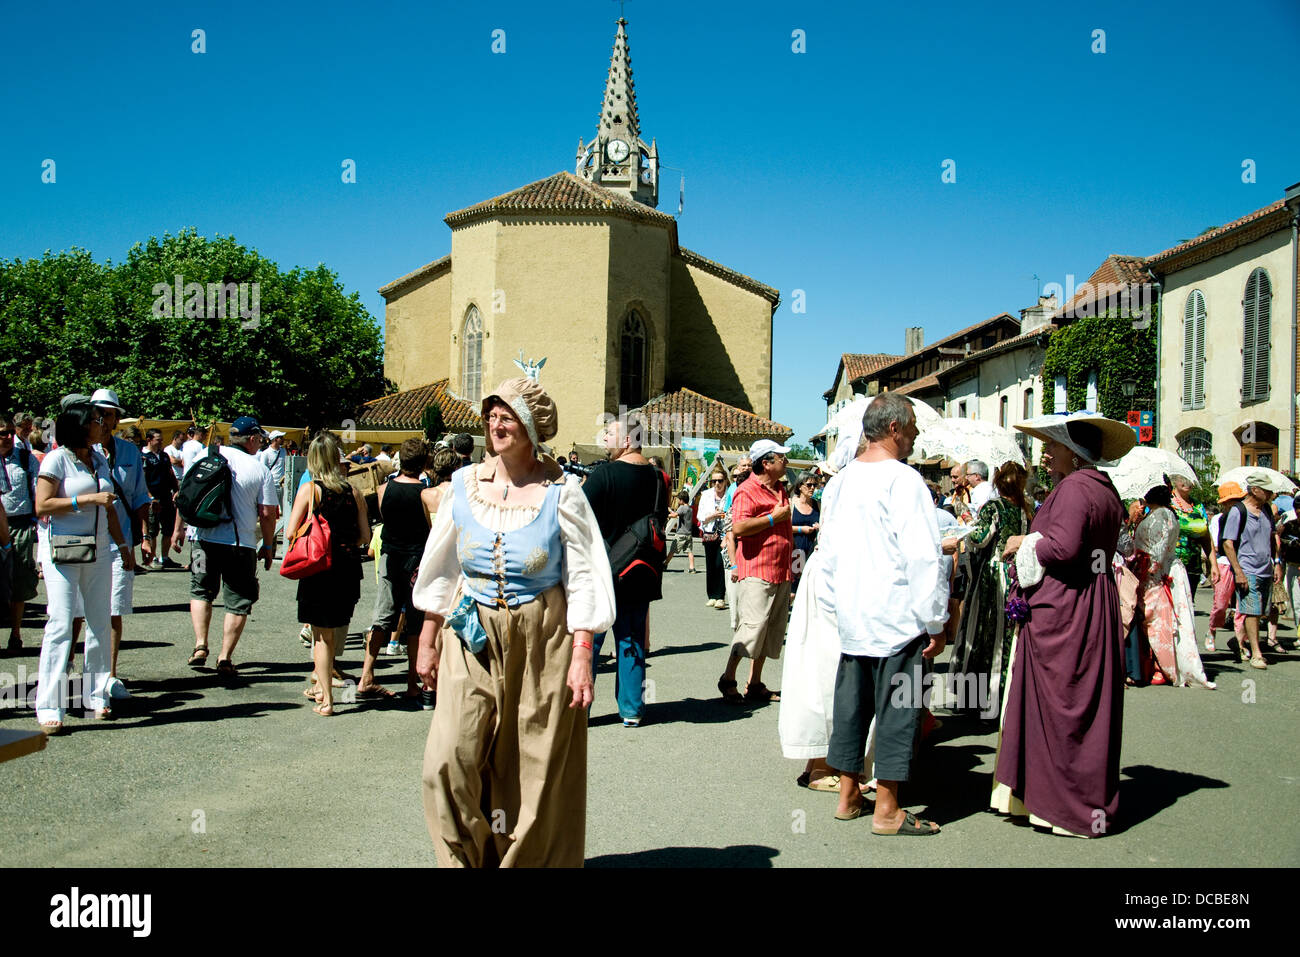 La plaza central de Lupiac, aldea francesa en el Gers, durante una festividad hijo nativo D'Artagnan Foto de stock